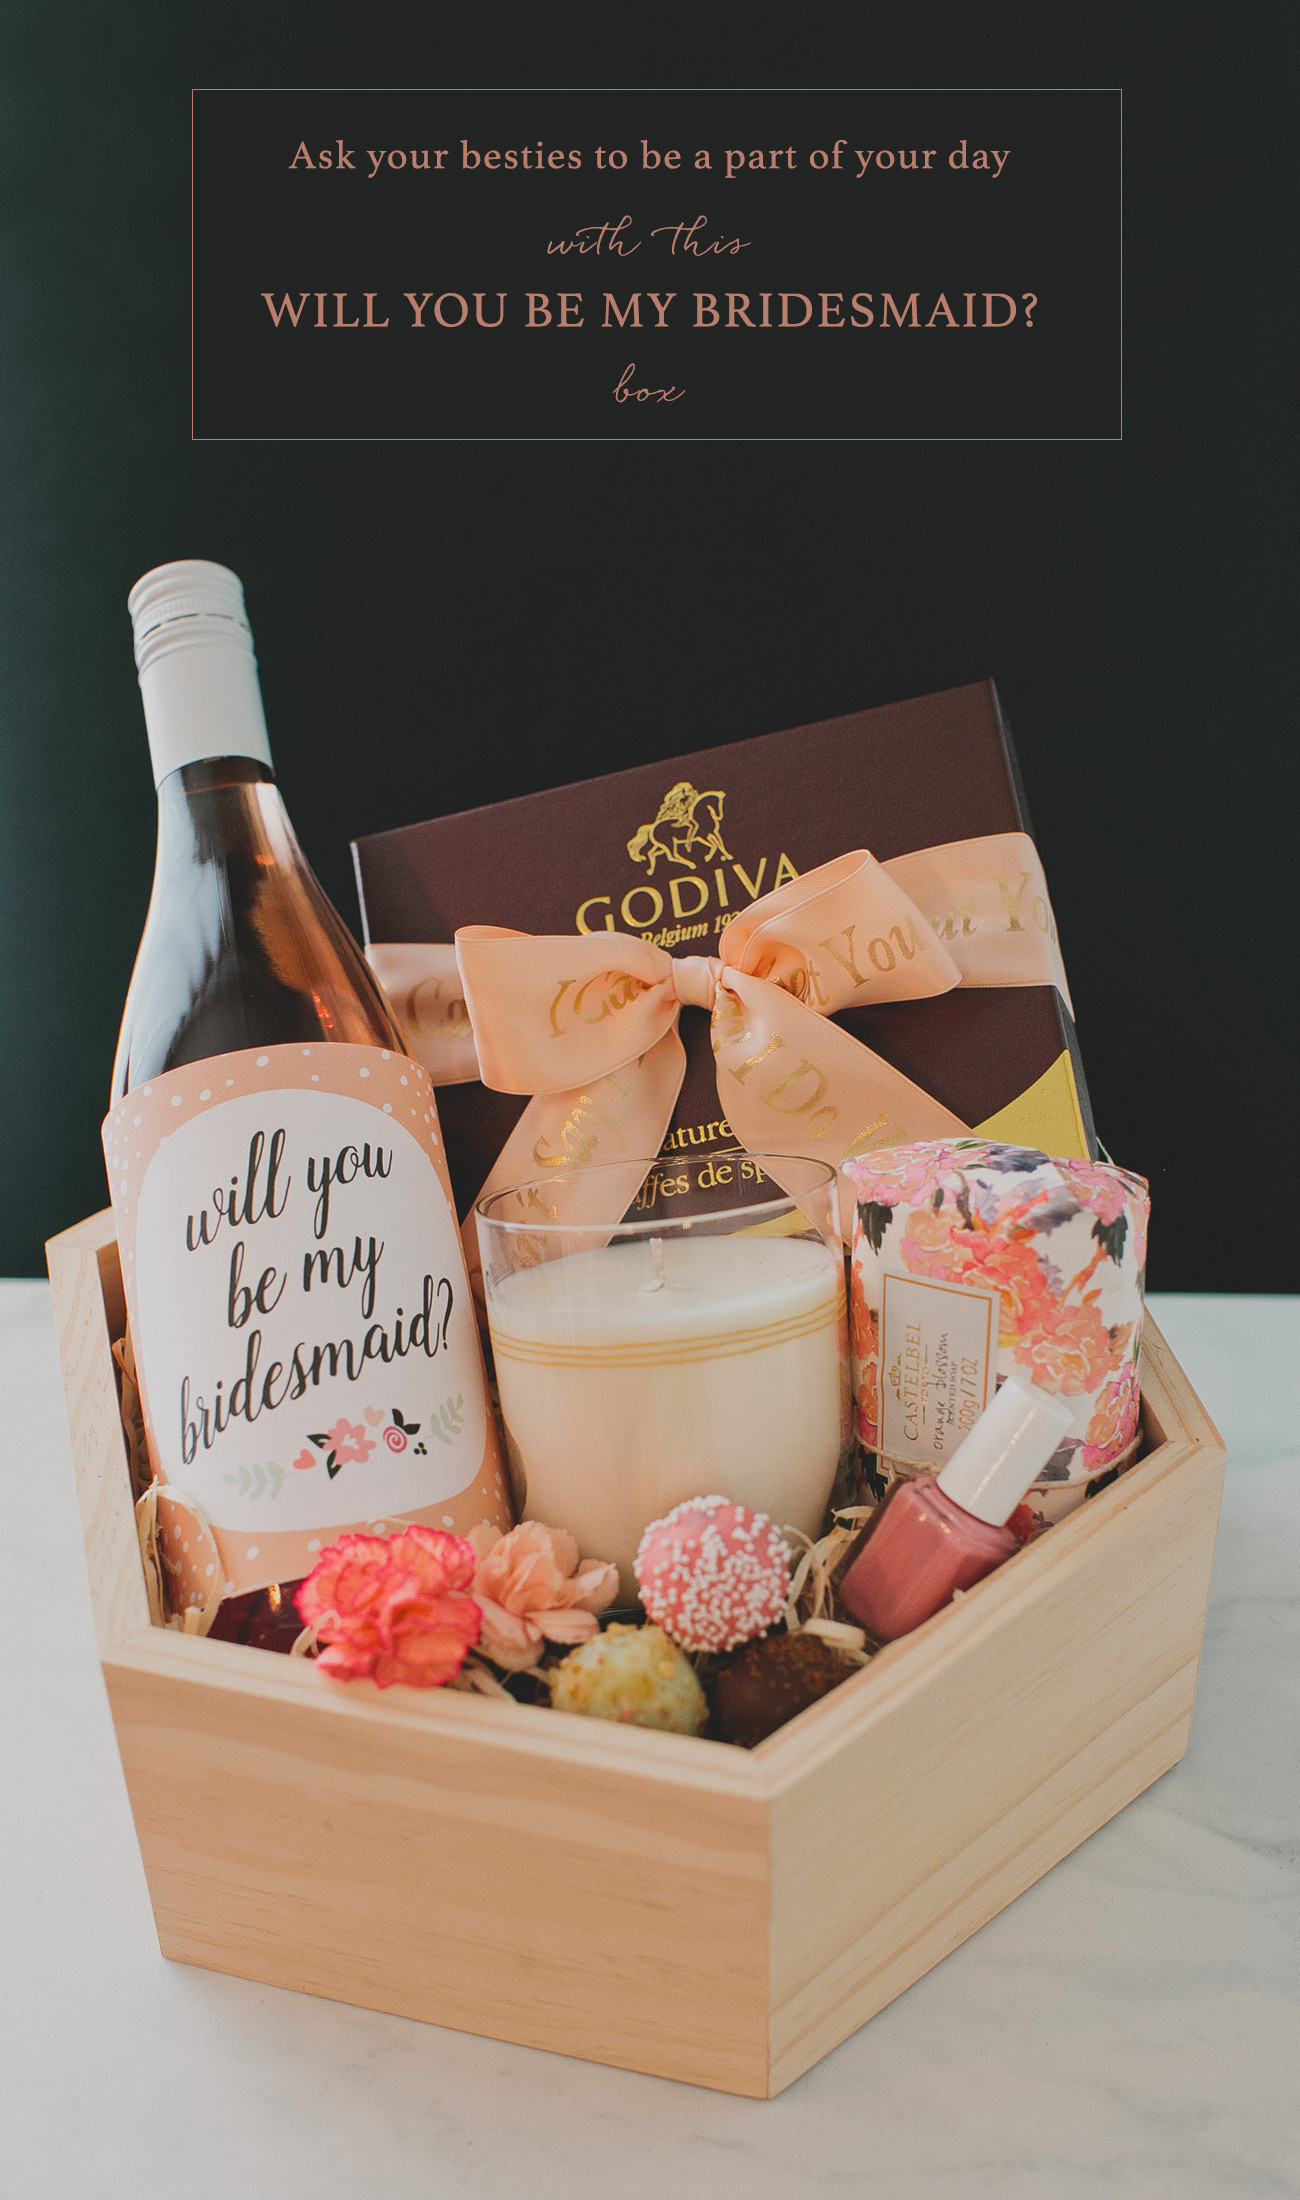 Wedding Bridesmaid Gifts
 DIY Bridesmaid Gift Box with Godiva